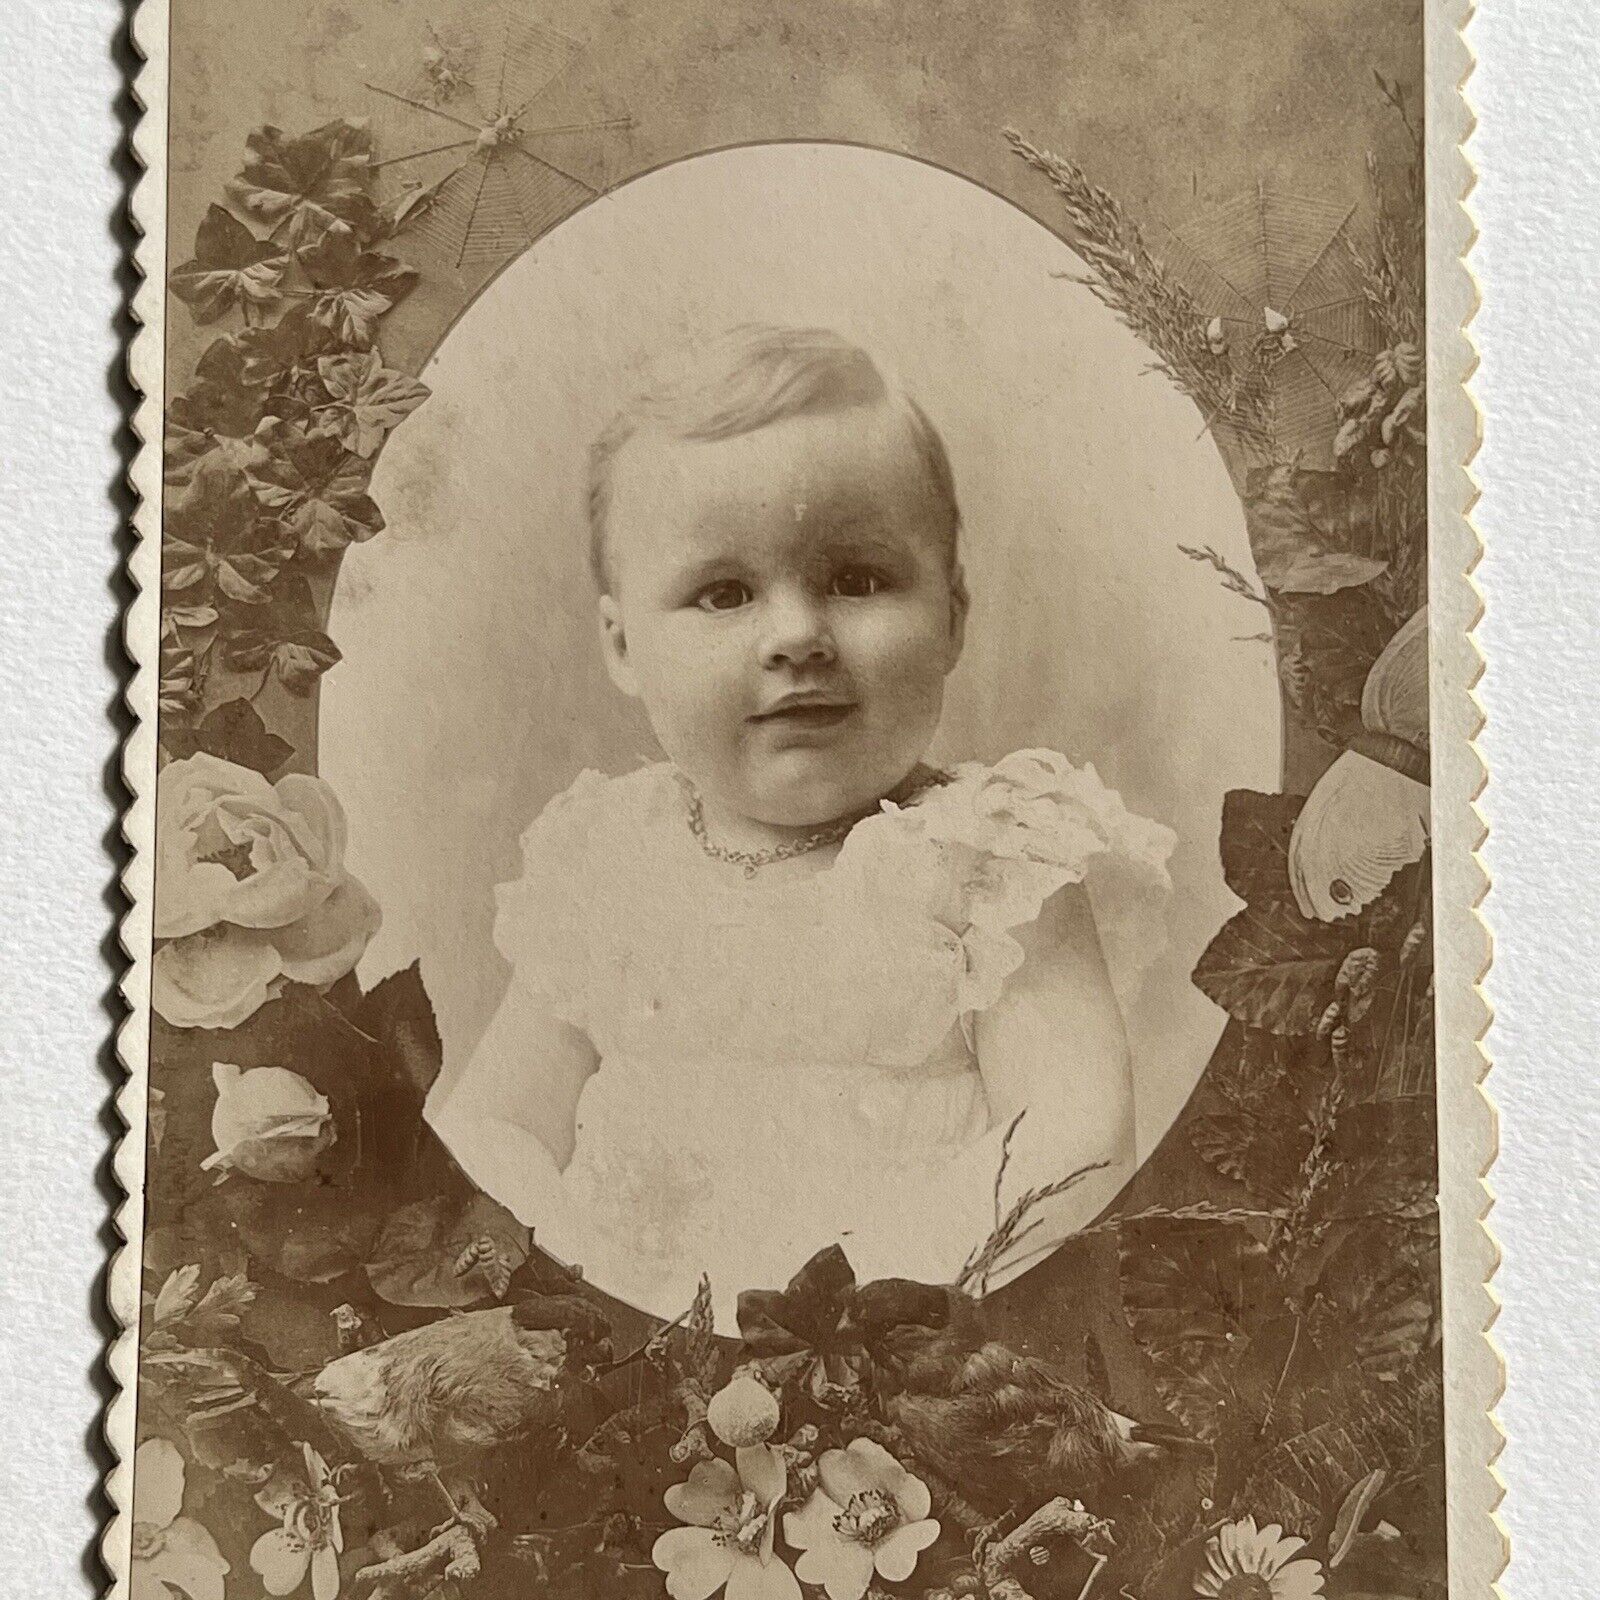 Antique Cabinet Card Photograph Adorable Baby Girl Memorial Montgomery City MO